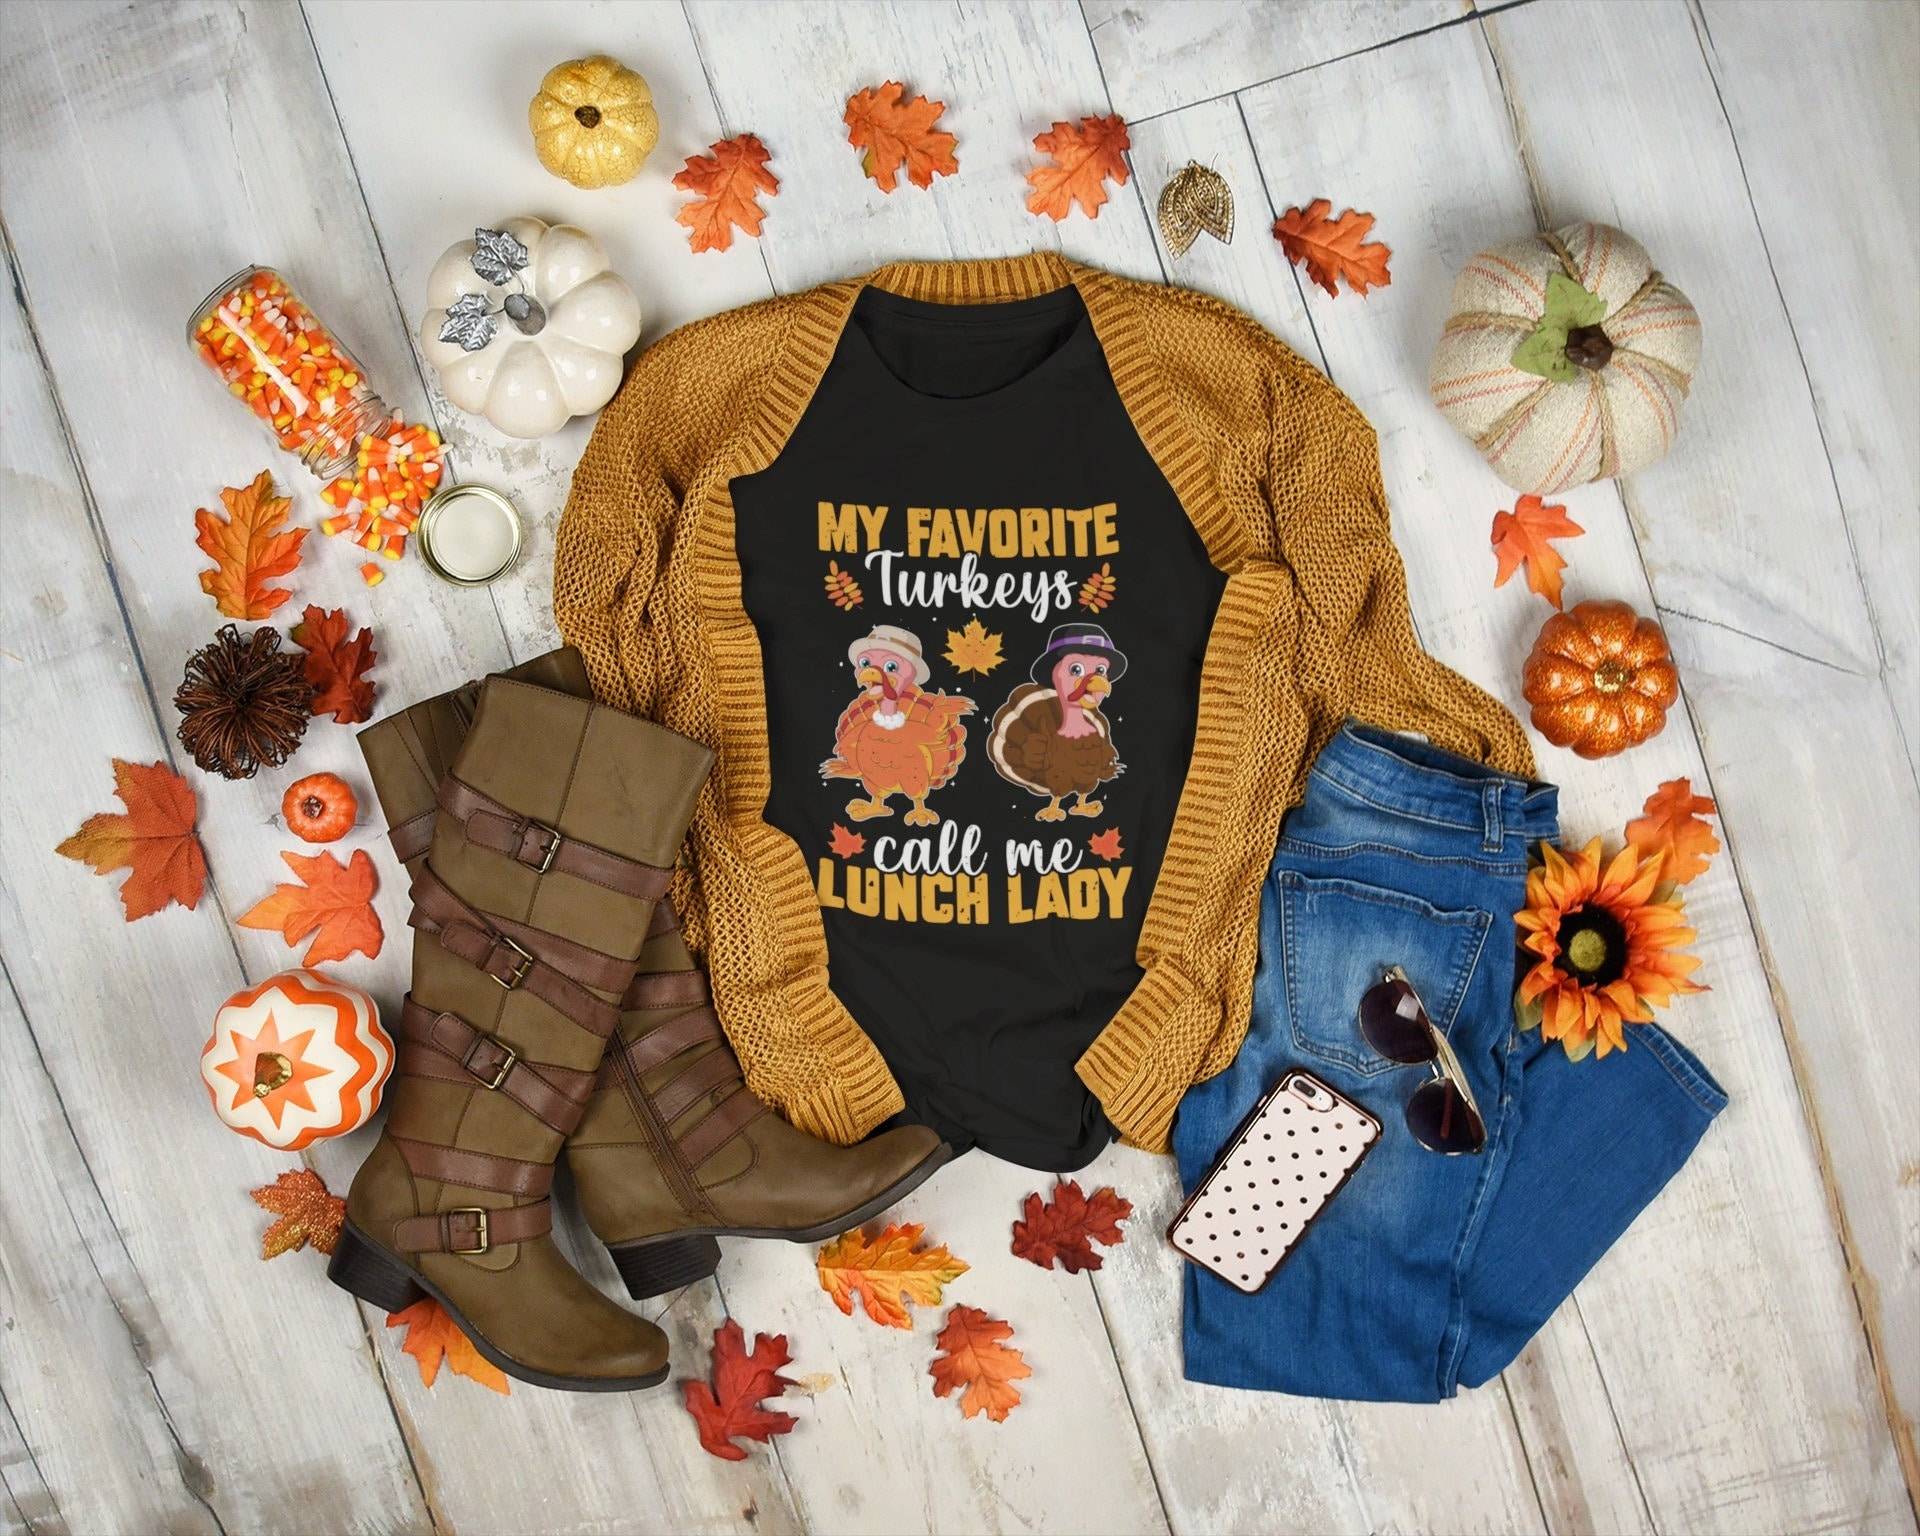 Schulessen Lady Shirt | My Favorite Turkeys Call Me Lunch Kantinendame Geschenk von TempusVitae